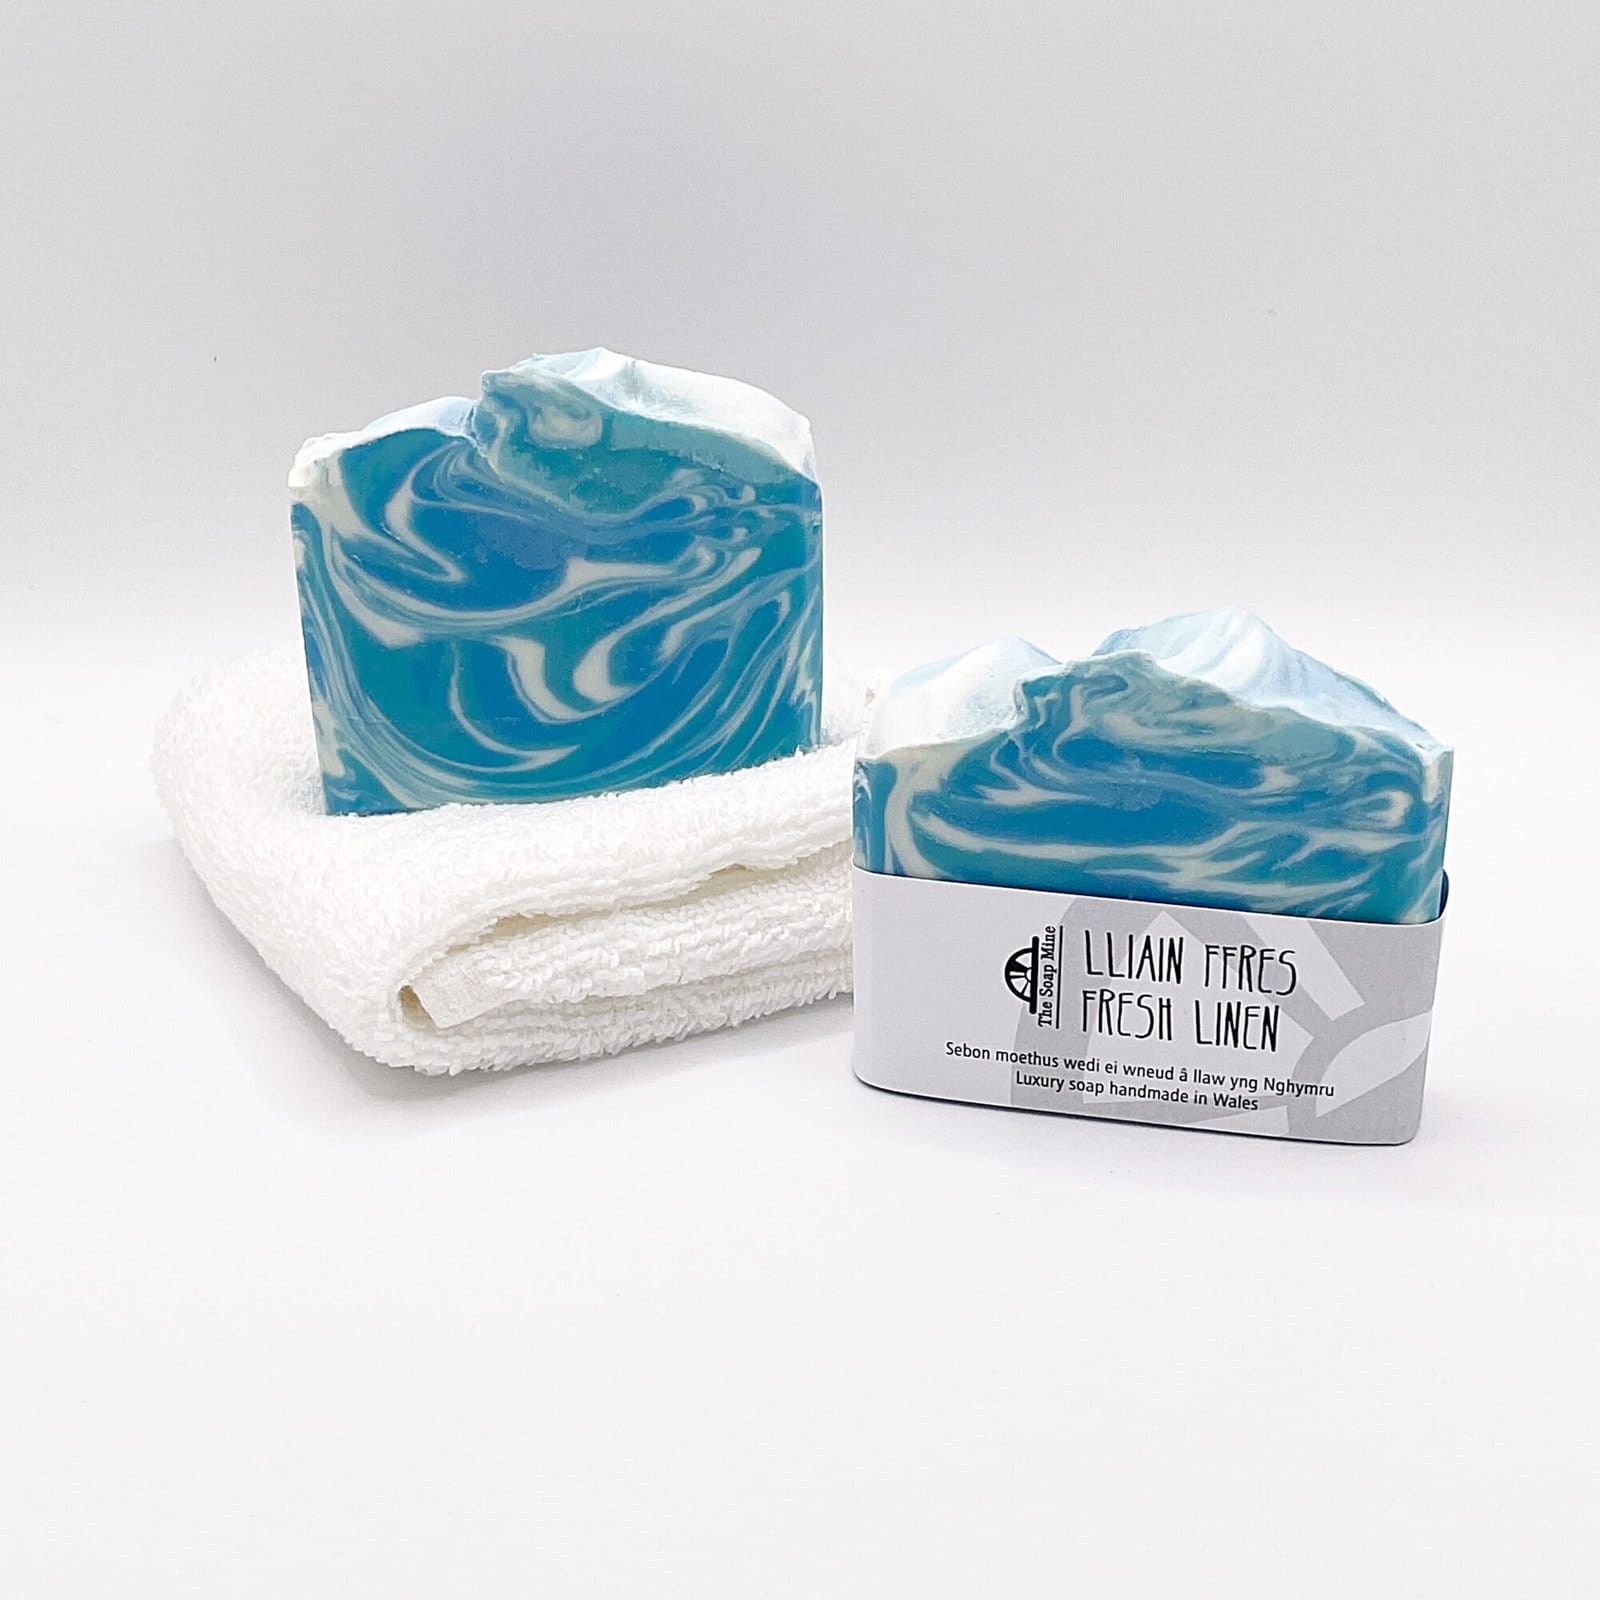 Two bars of Fresh Linen Handmade Soap